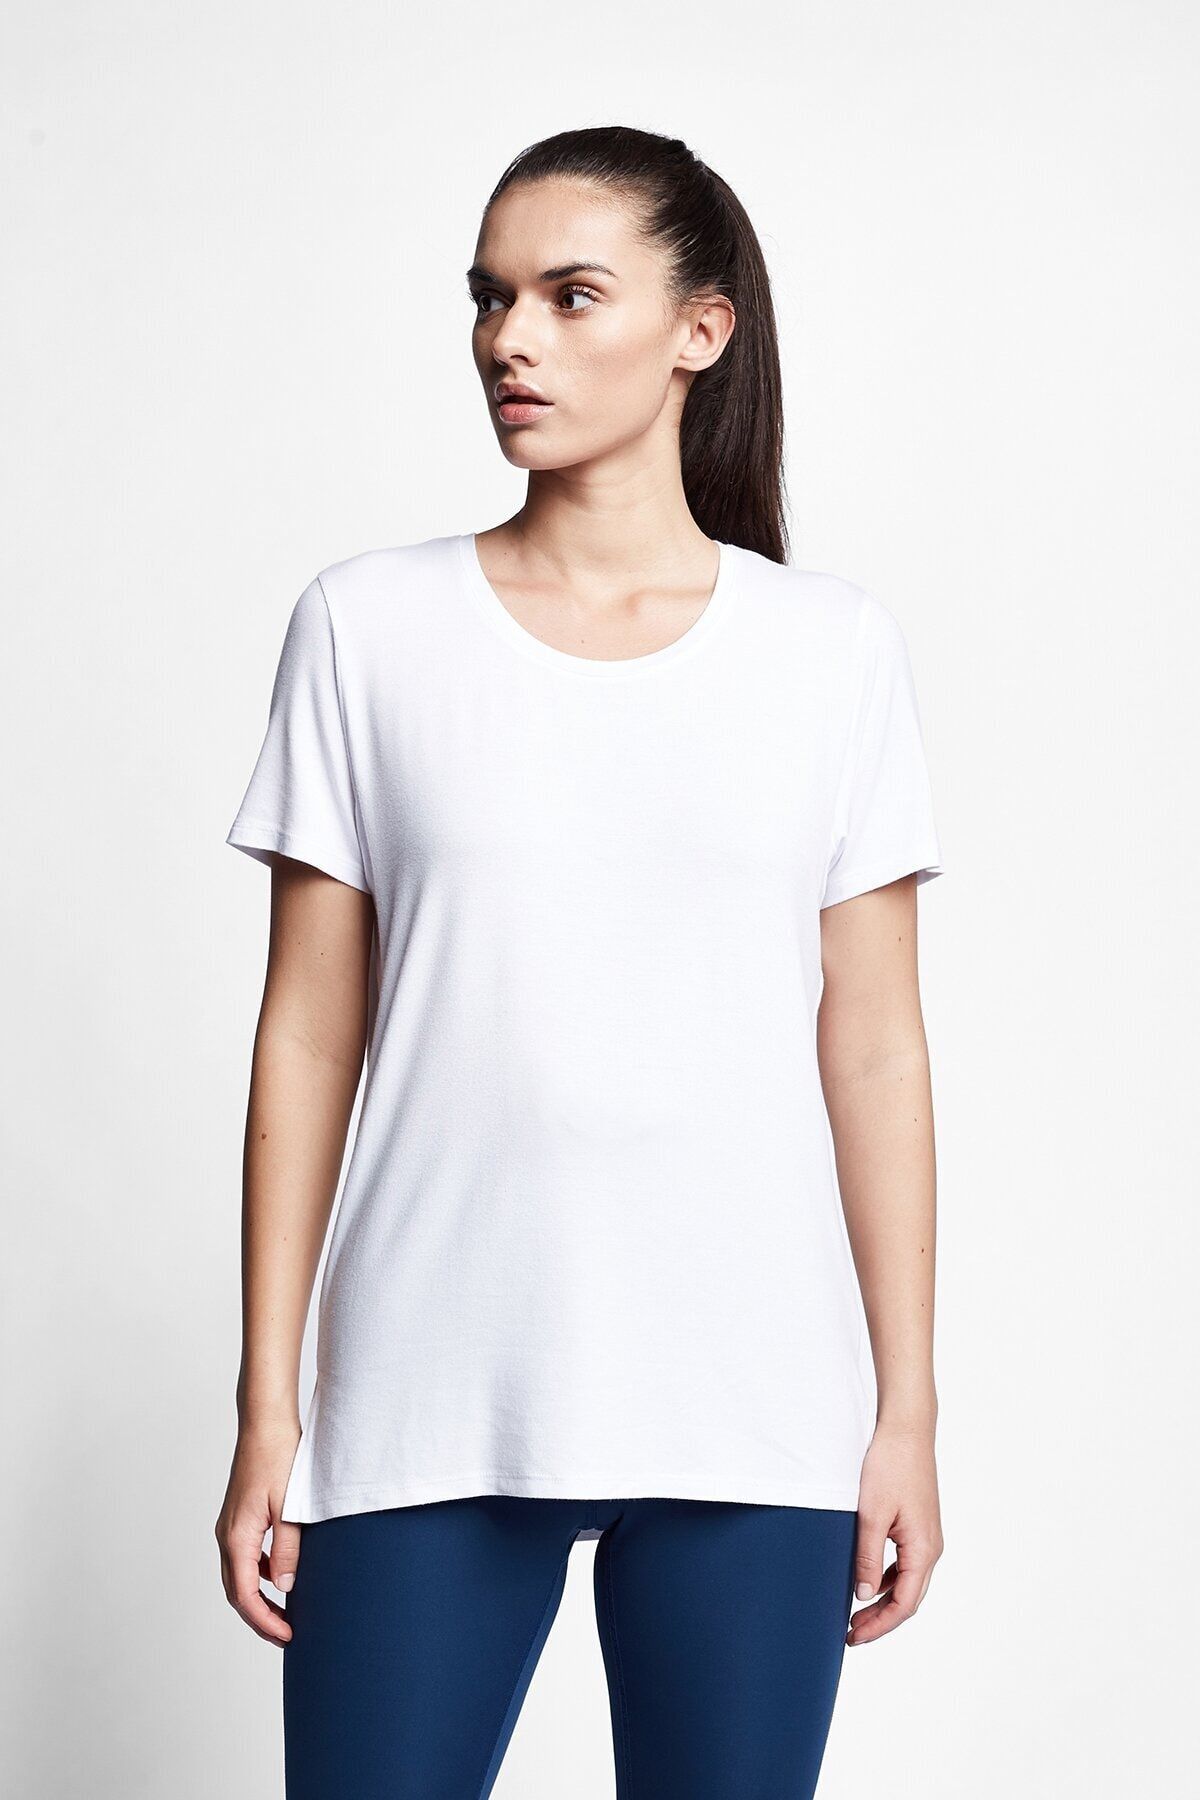 Lescon Beyaz Kadın T-shirt 21s-2210-21n